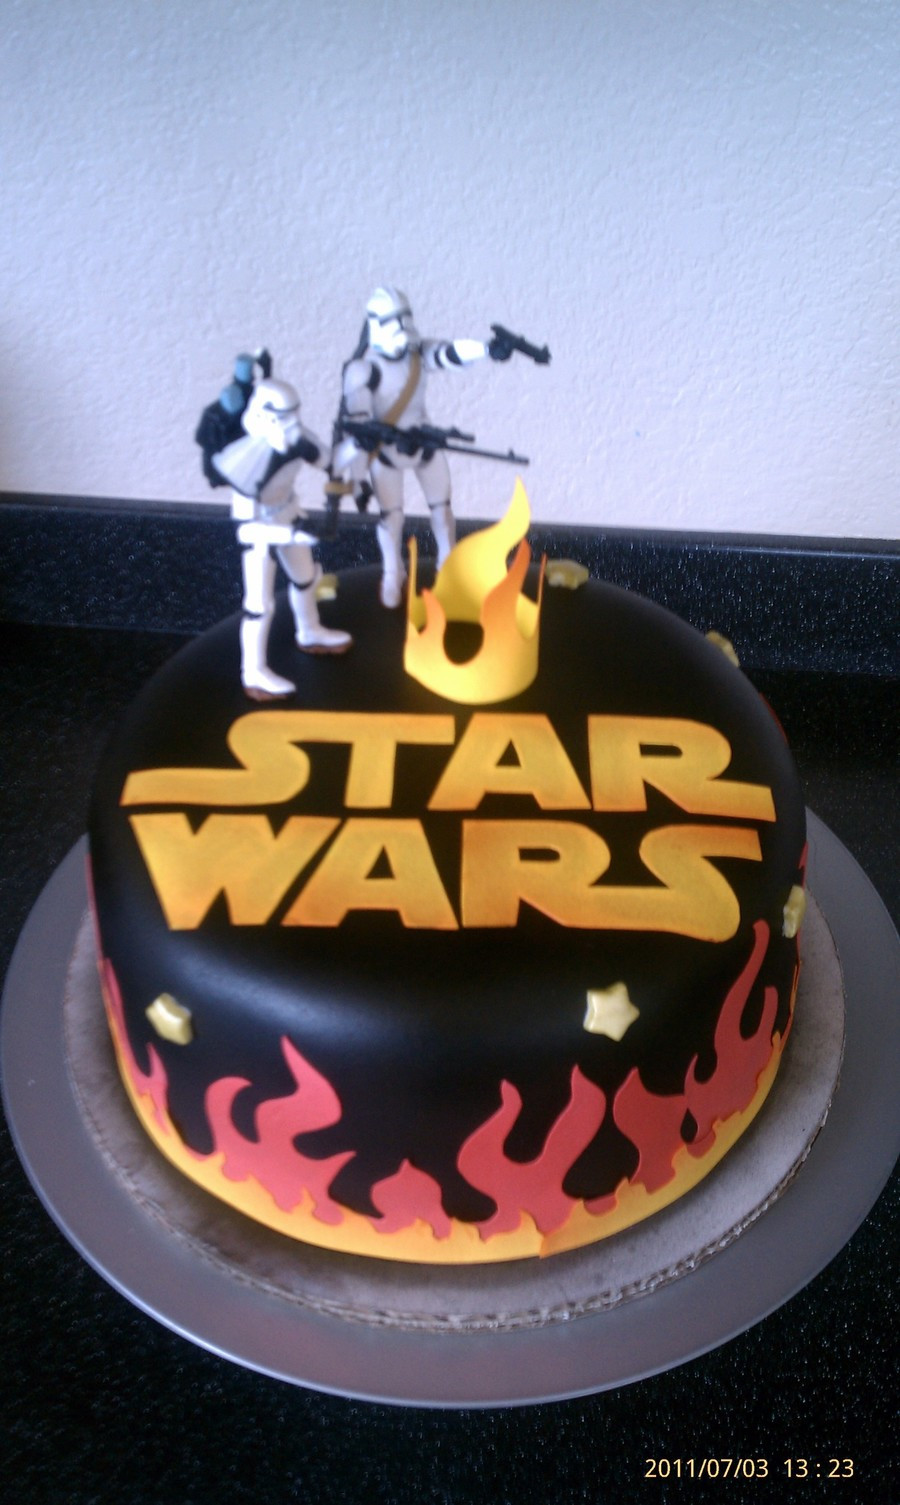 Best ideas about Star Wars Birthday Cake
. Save or Pin Star Wars Birthday Cake CakeCentral Now.